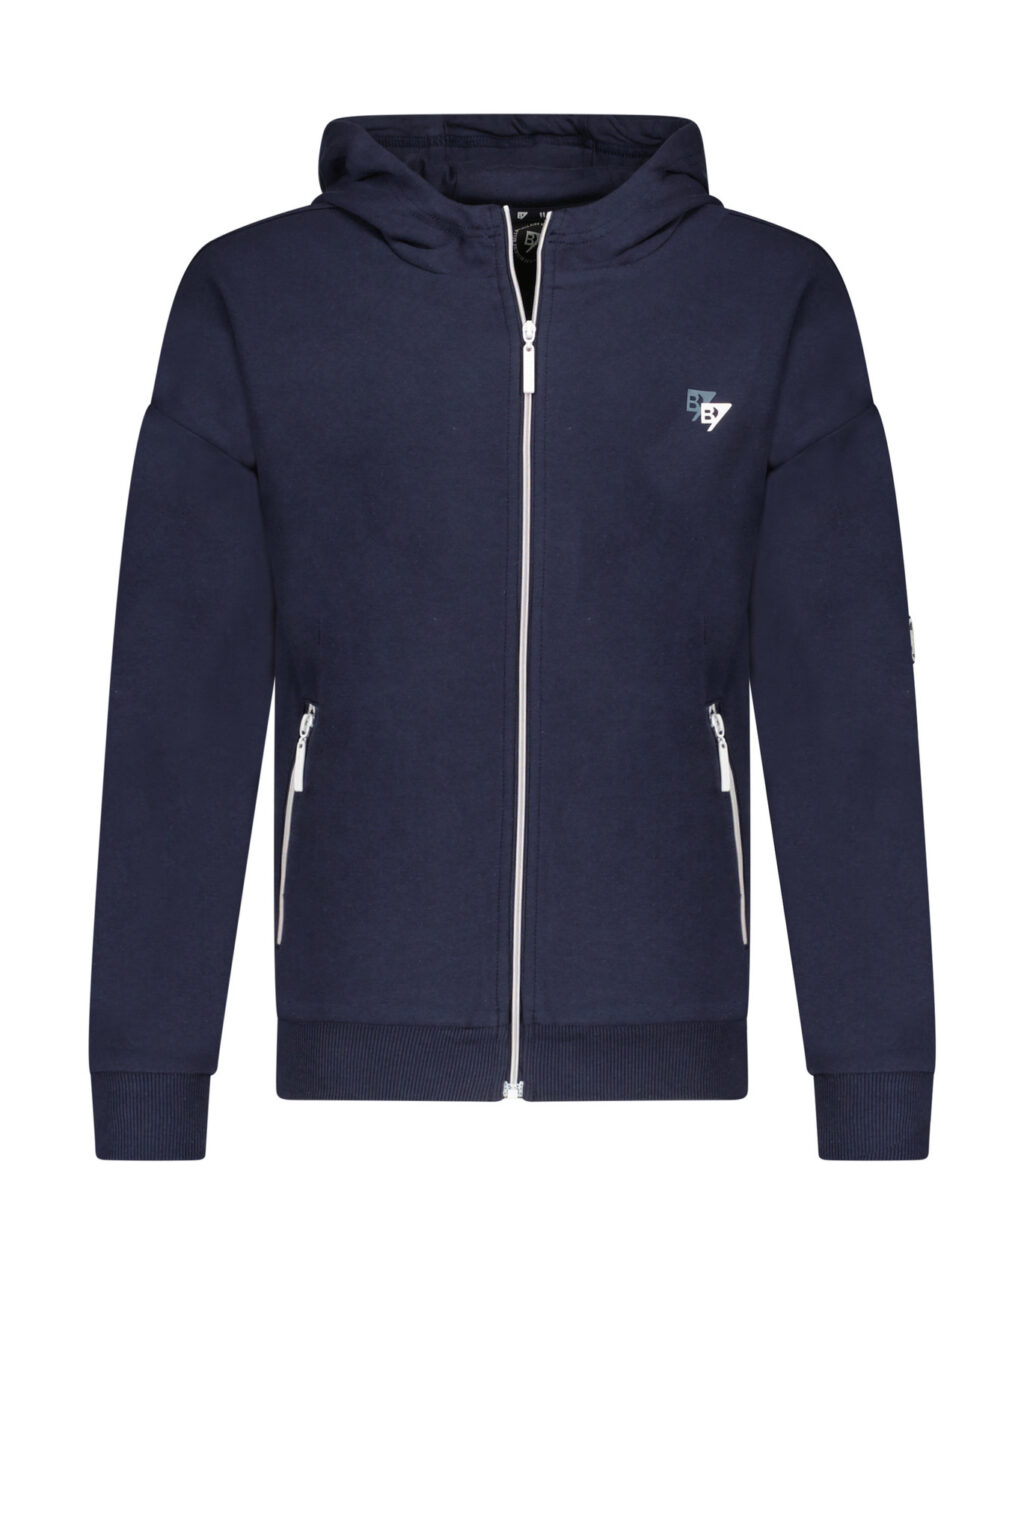 Bellaire Jongens hoodie - Navy blauw blazer ~ Spinze.nl